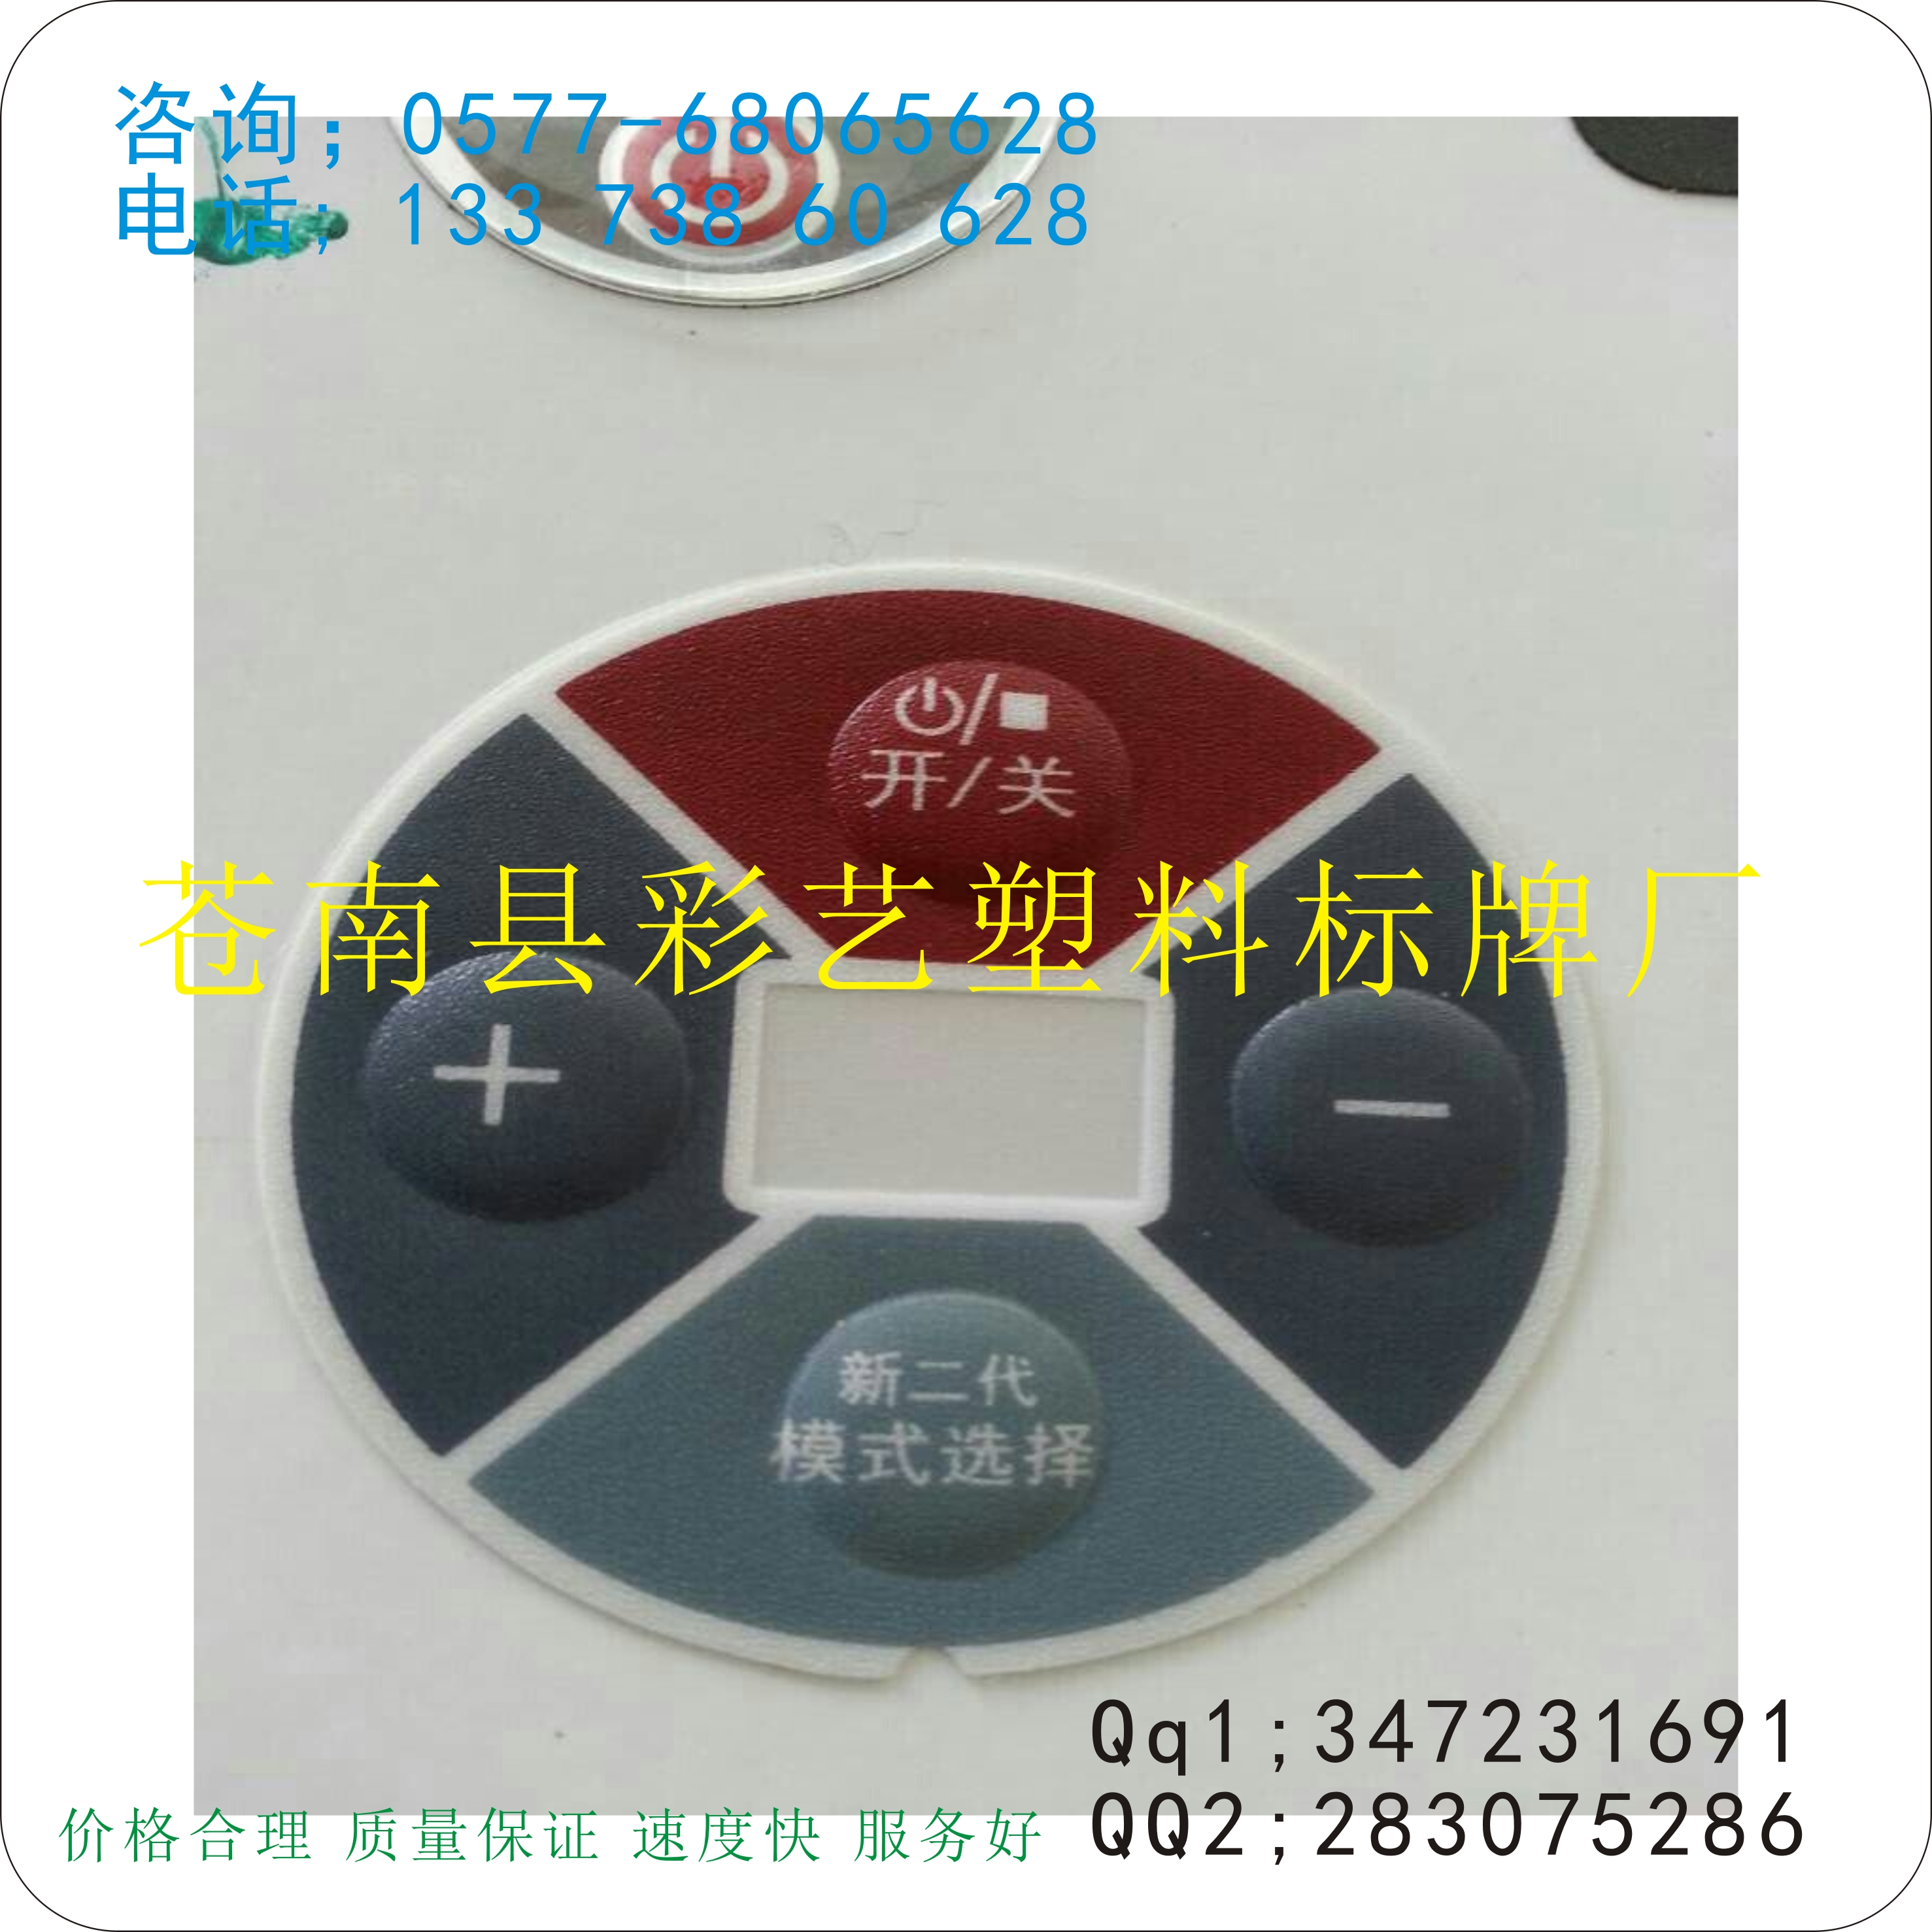 专业制作标签  电器标签 机器标签 机械标签 产品标签